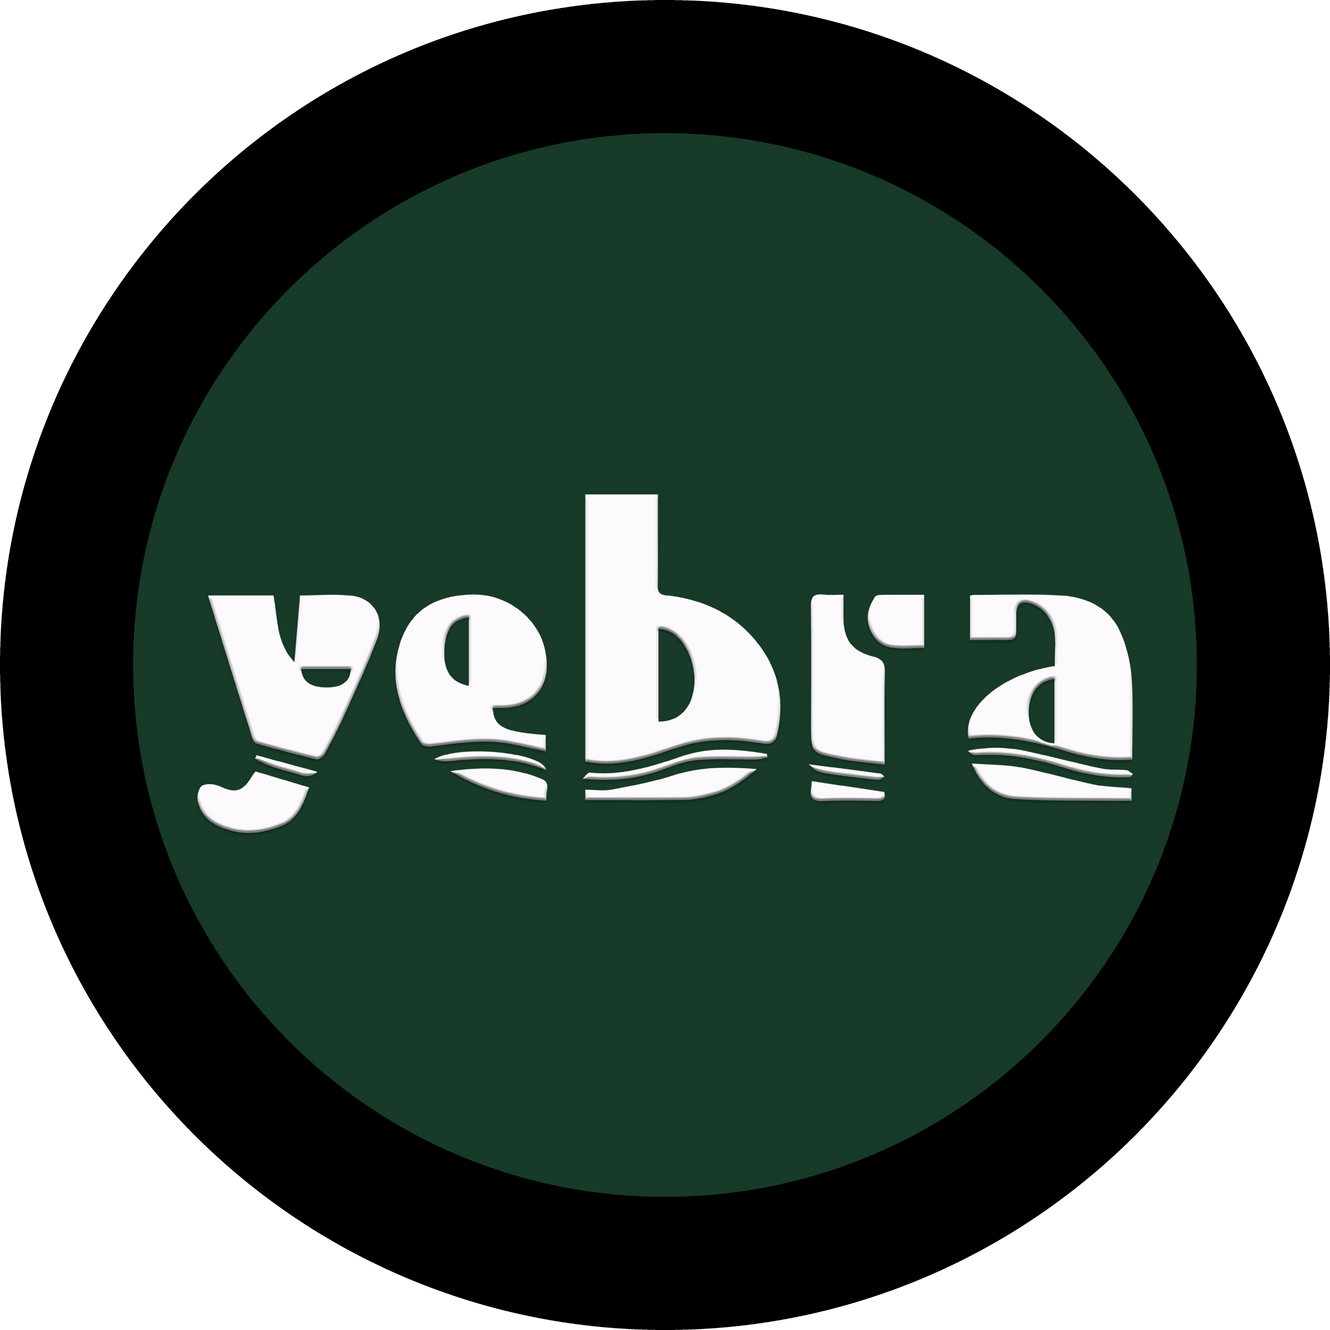 yebra-logo